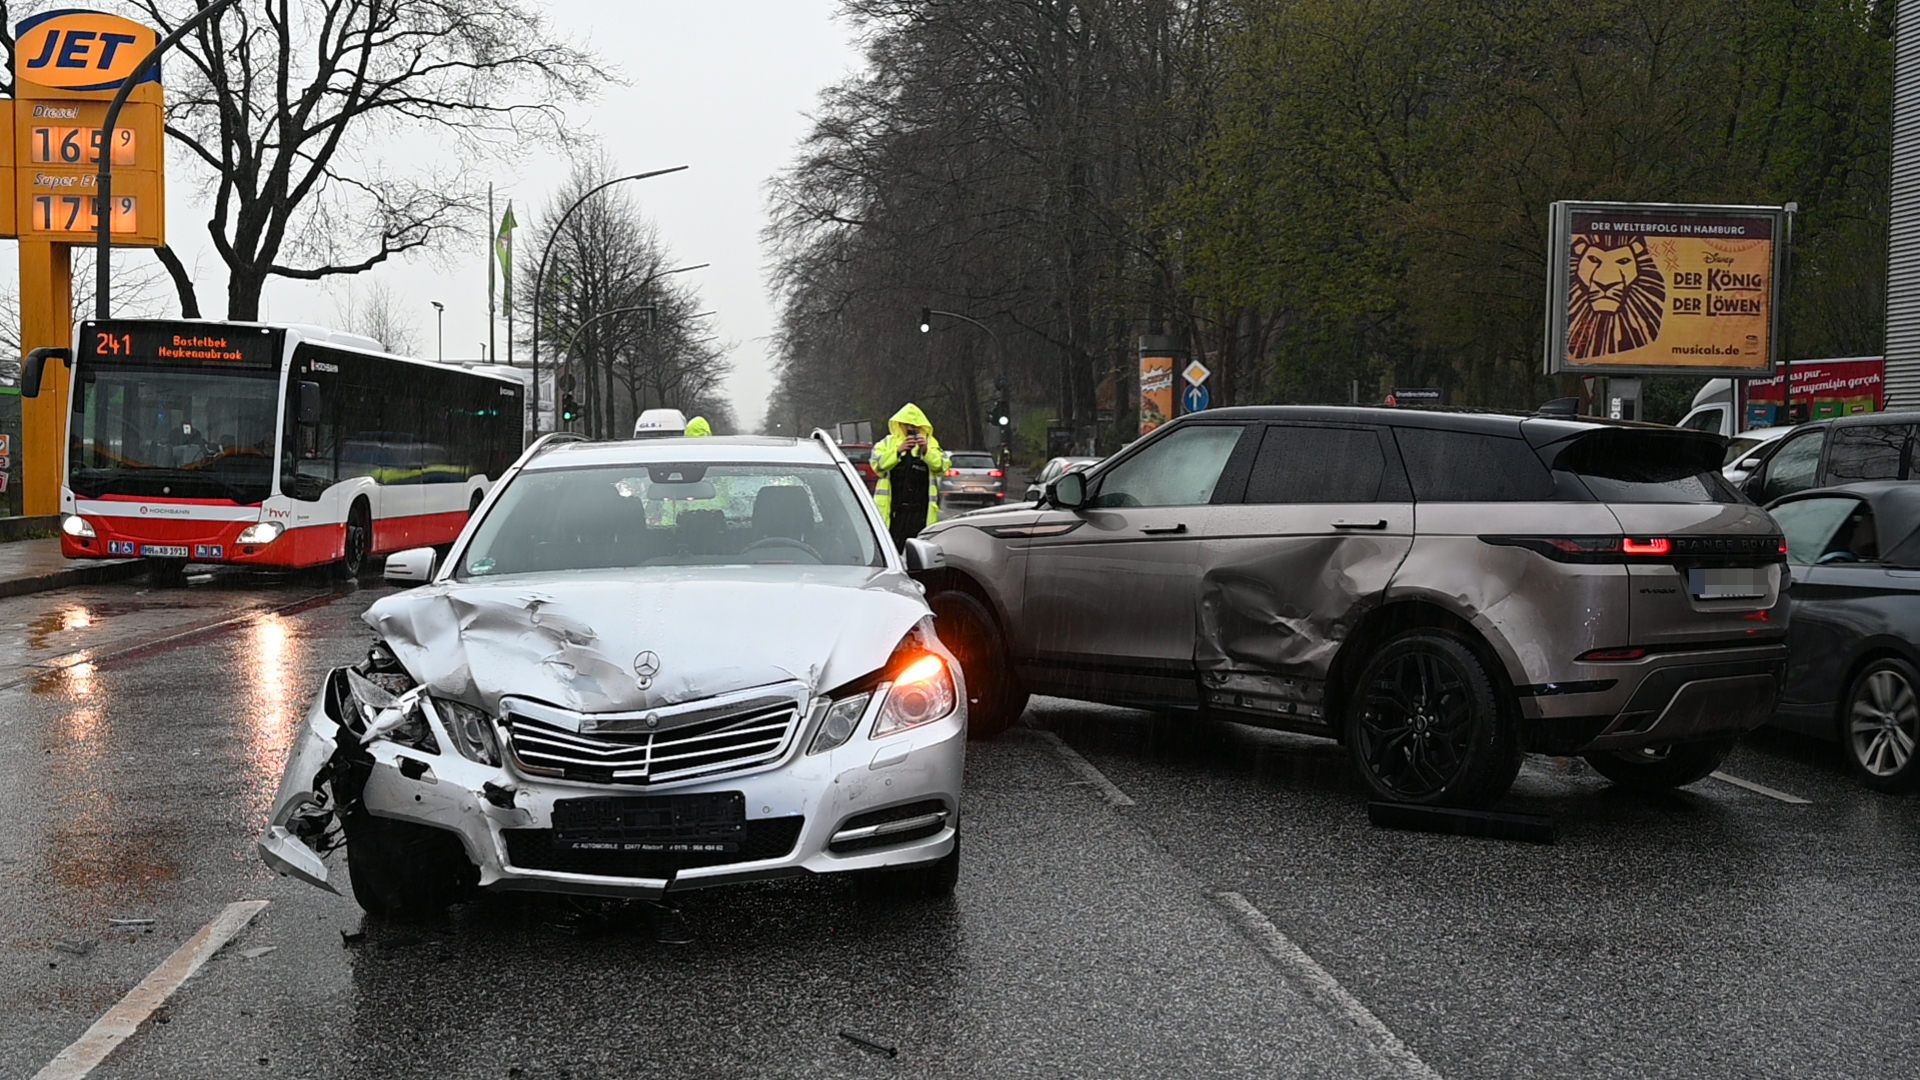 Die Buxtehuder Straße war nach dem Unfall nur einspurig in beide Richtungen befahrbar.